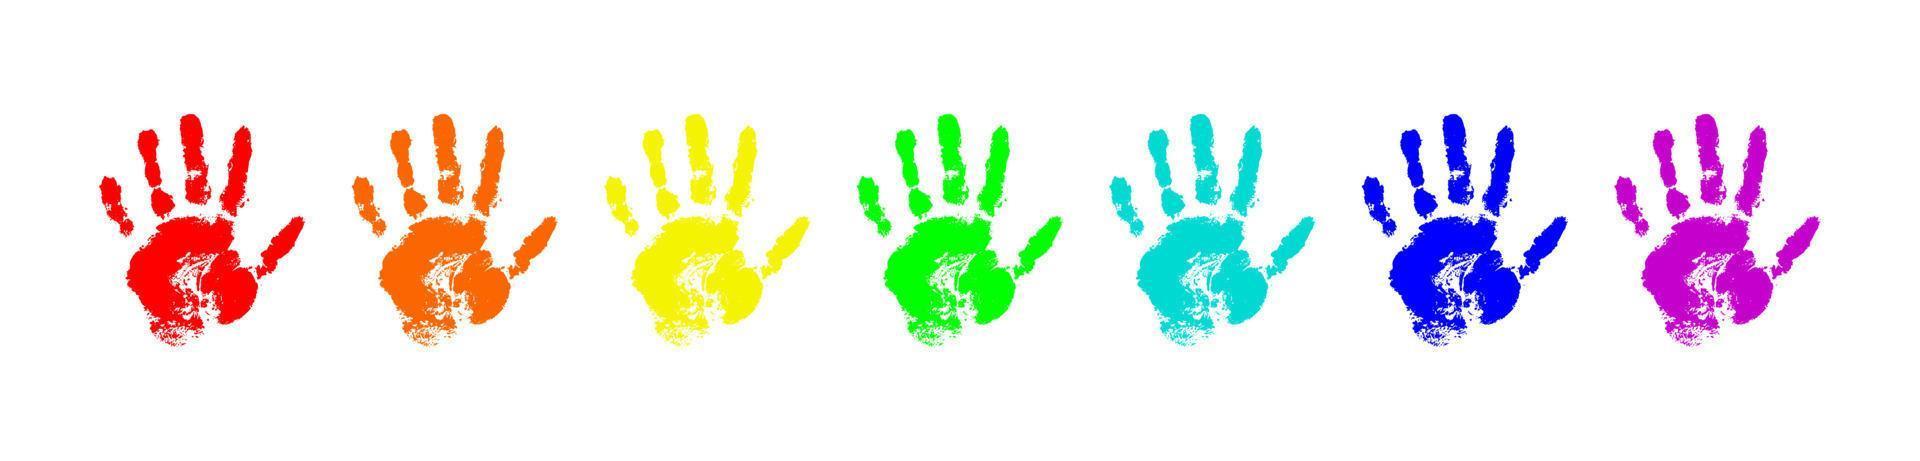 regnbågshandtryck isolerad på vit bakgrund. färg barn handavtryck. mångfärgade mänskliga fingrar. vektor handritade illustration